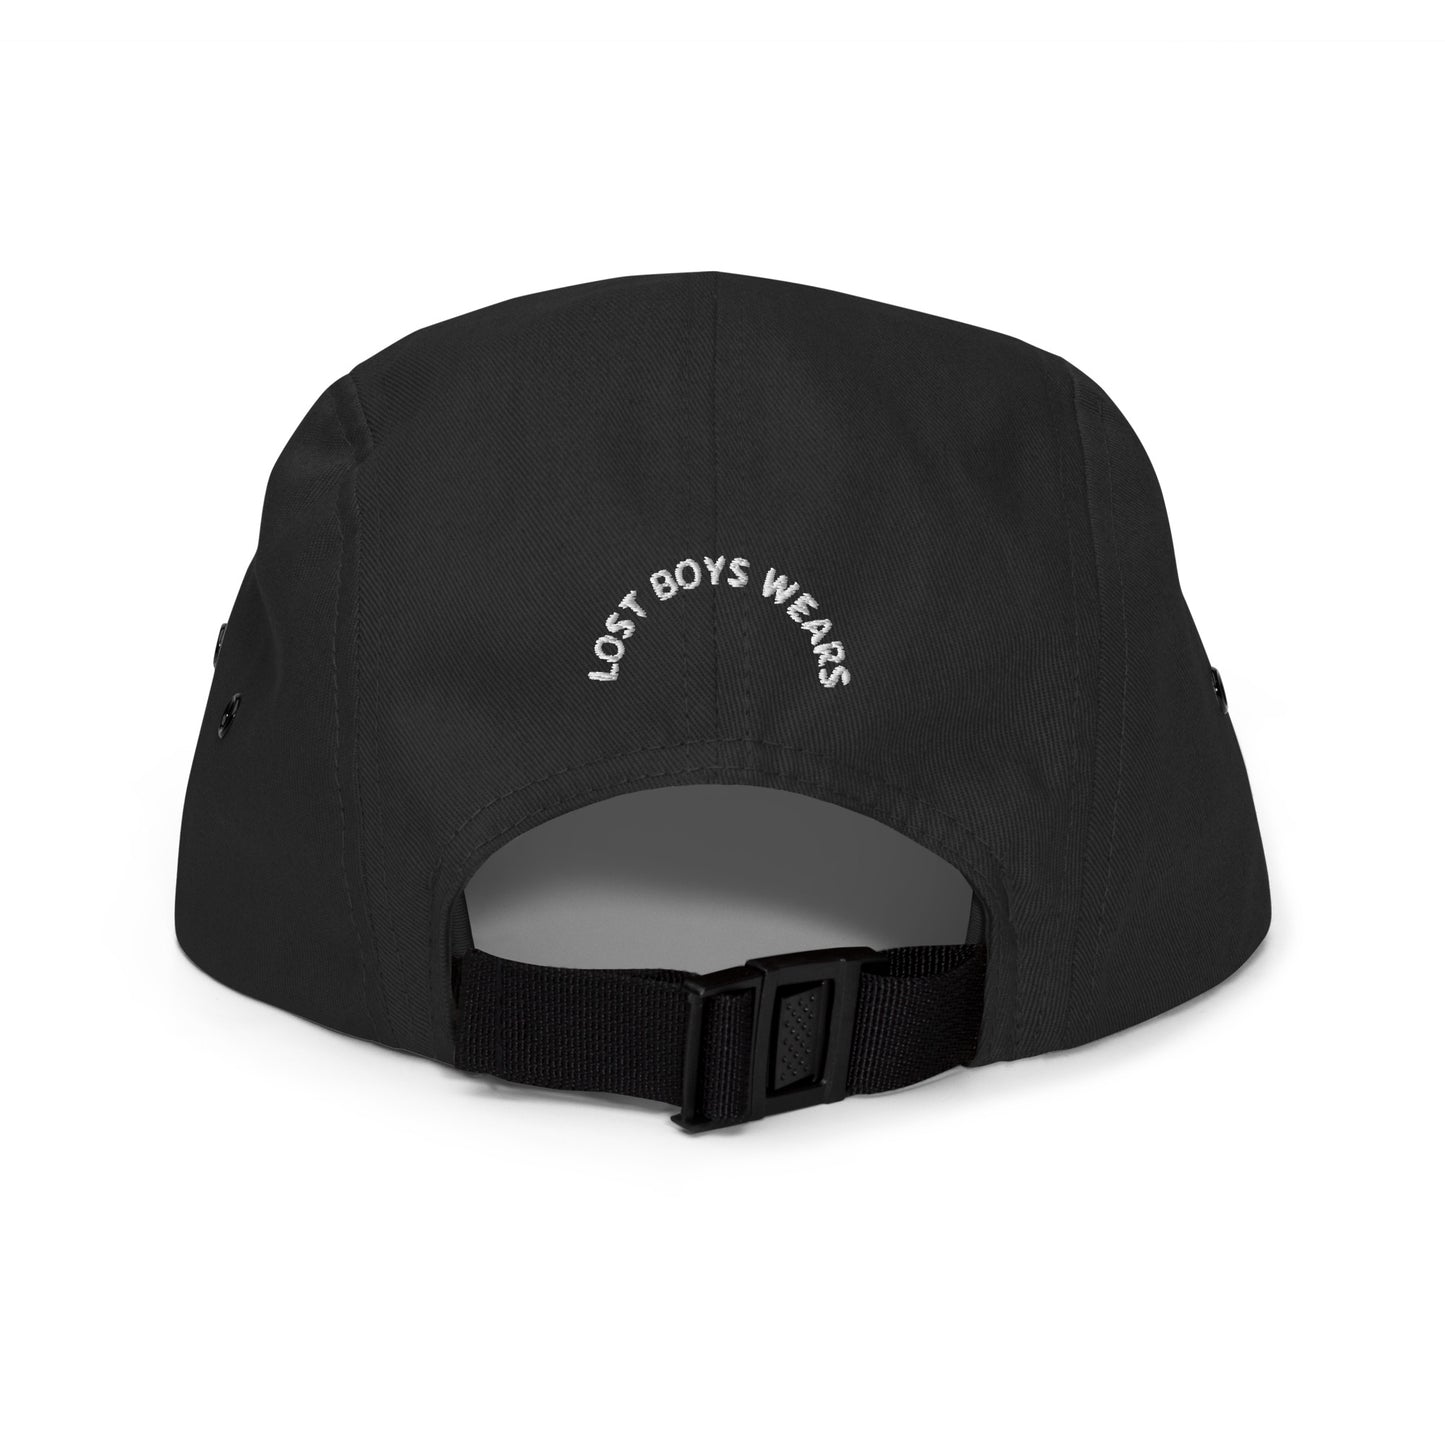 Camper luv (5 panel hat)